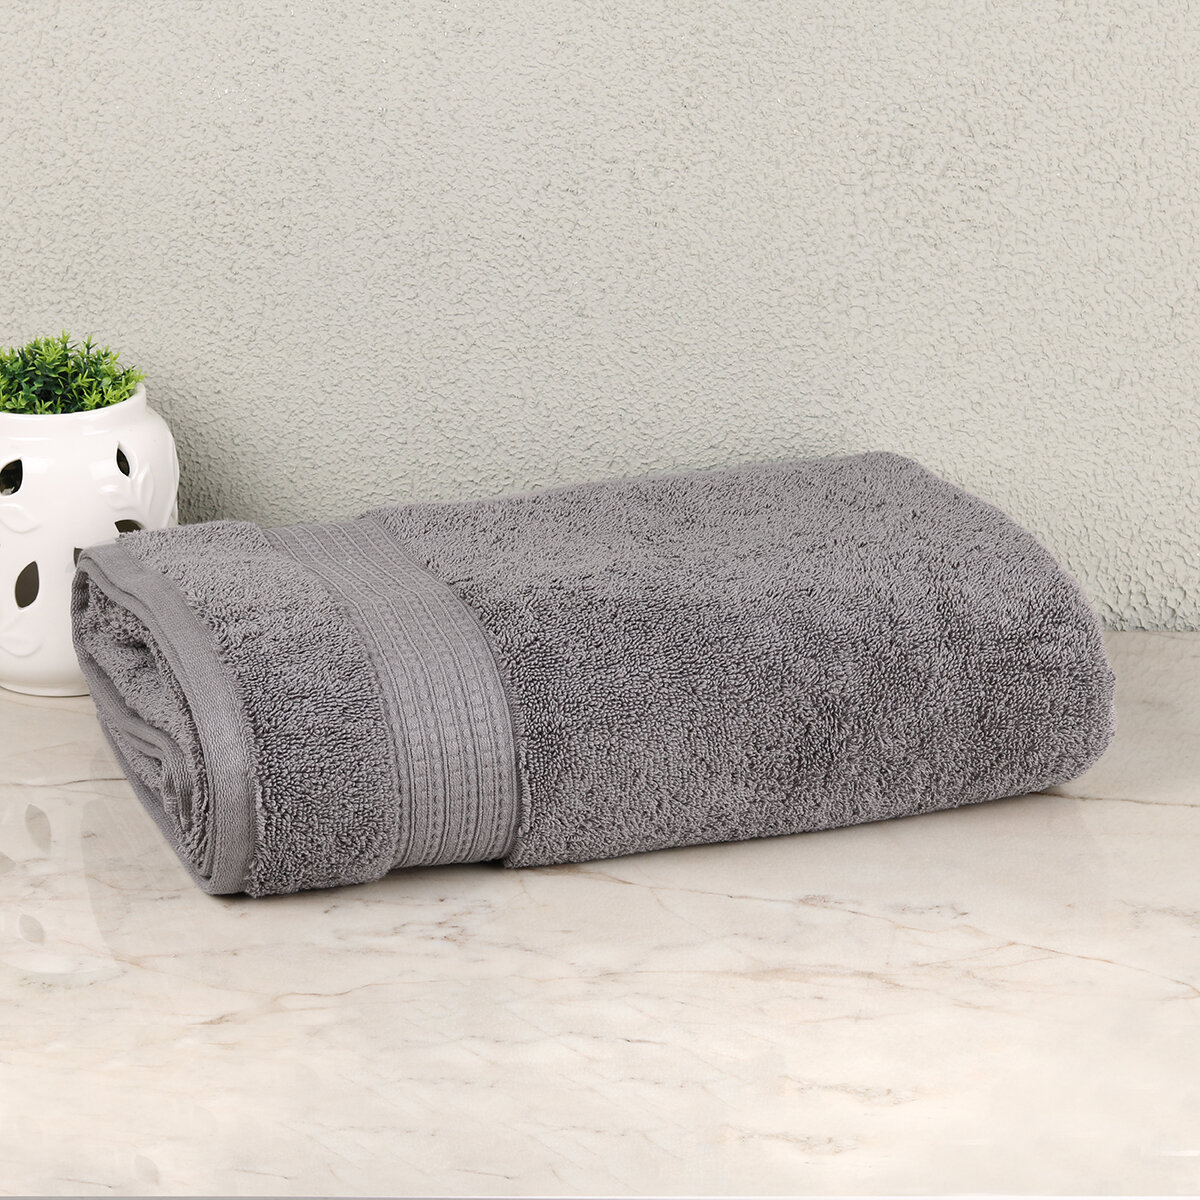  Toallas de baño grandes negras toalla de baño gruesa de algodón  puro toalla de baño para el hogar baño hotel adulto 34X75Cm150G : Hogar y  Cocina